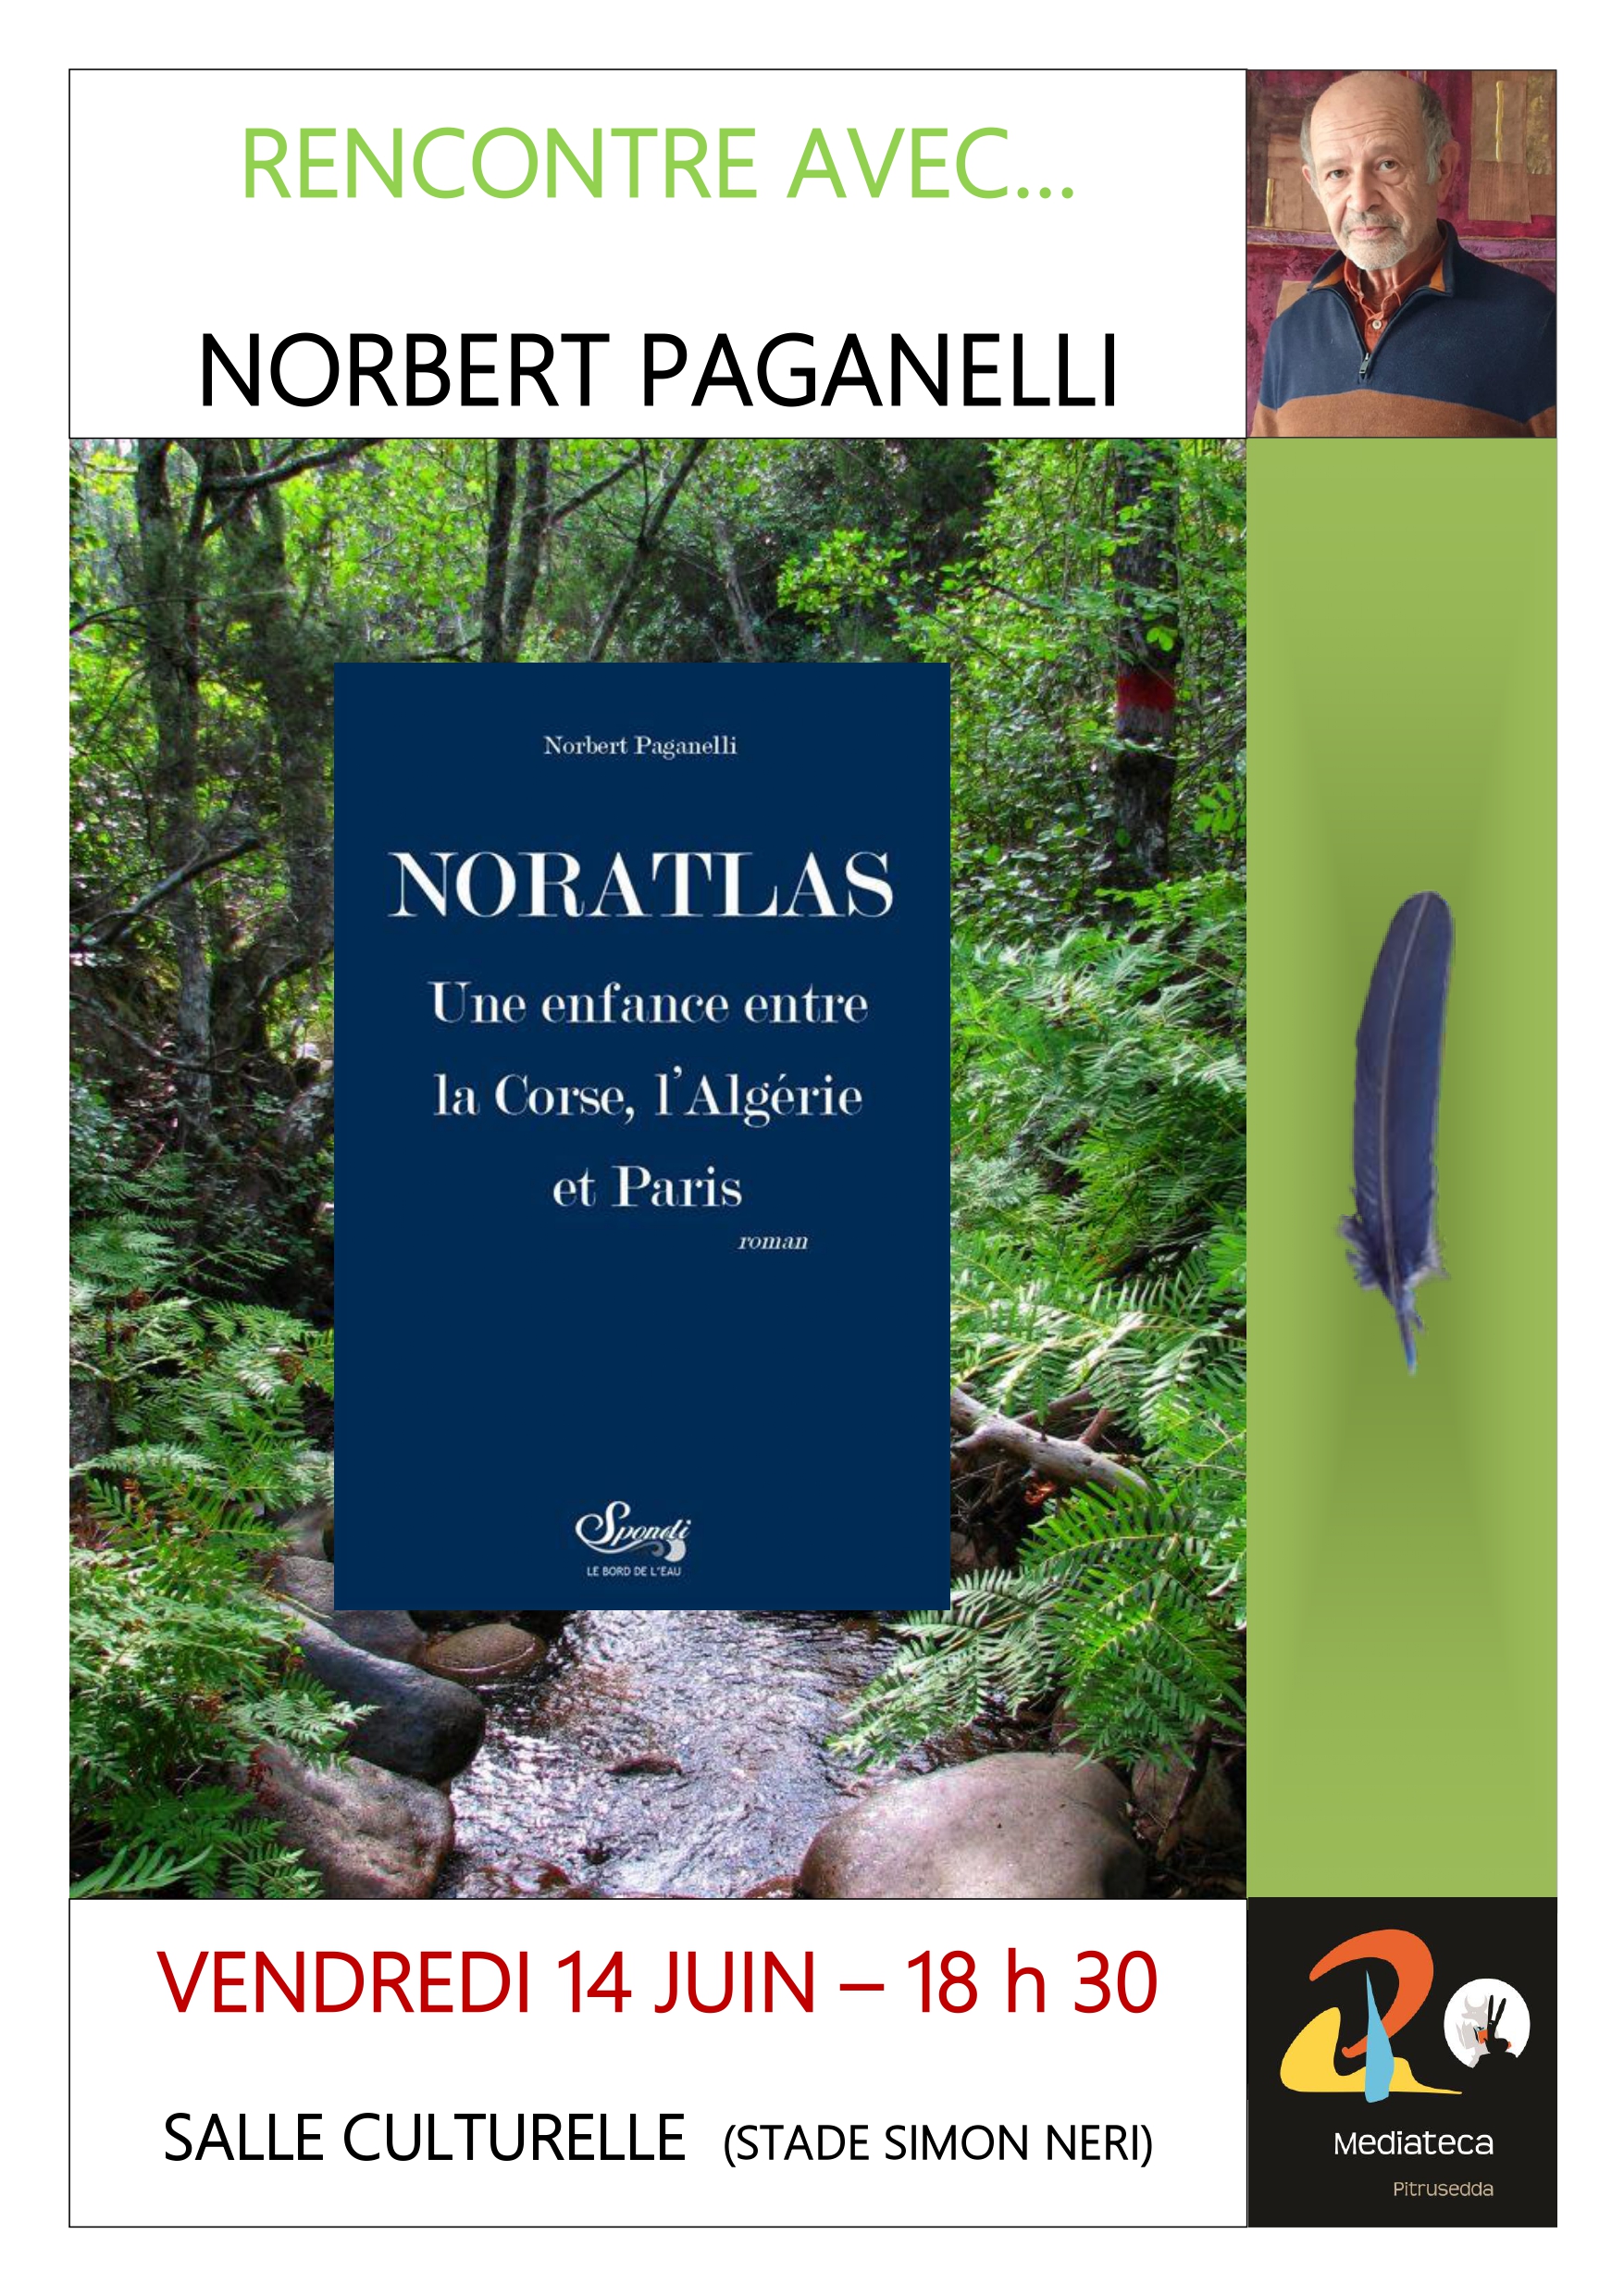 Rencontre avec l'auteur Norbert Paganelli